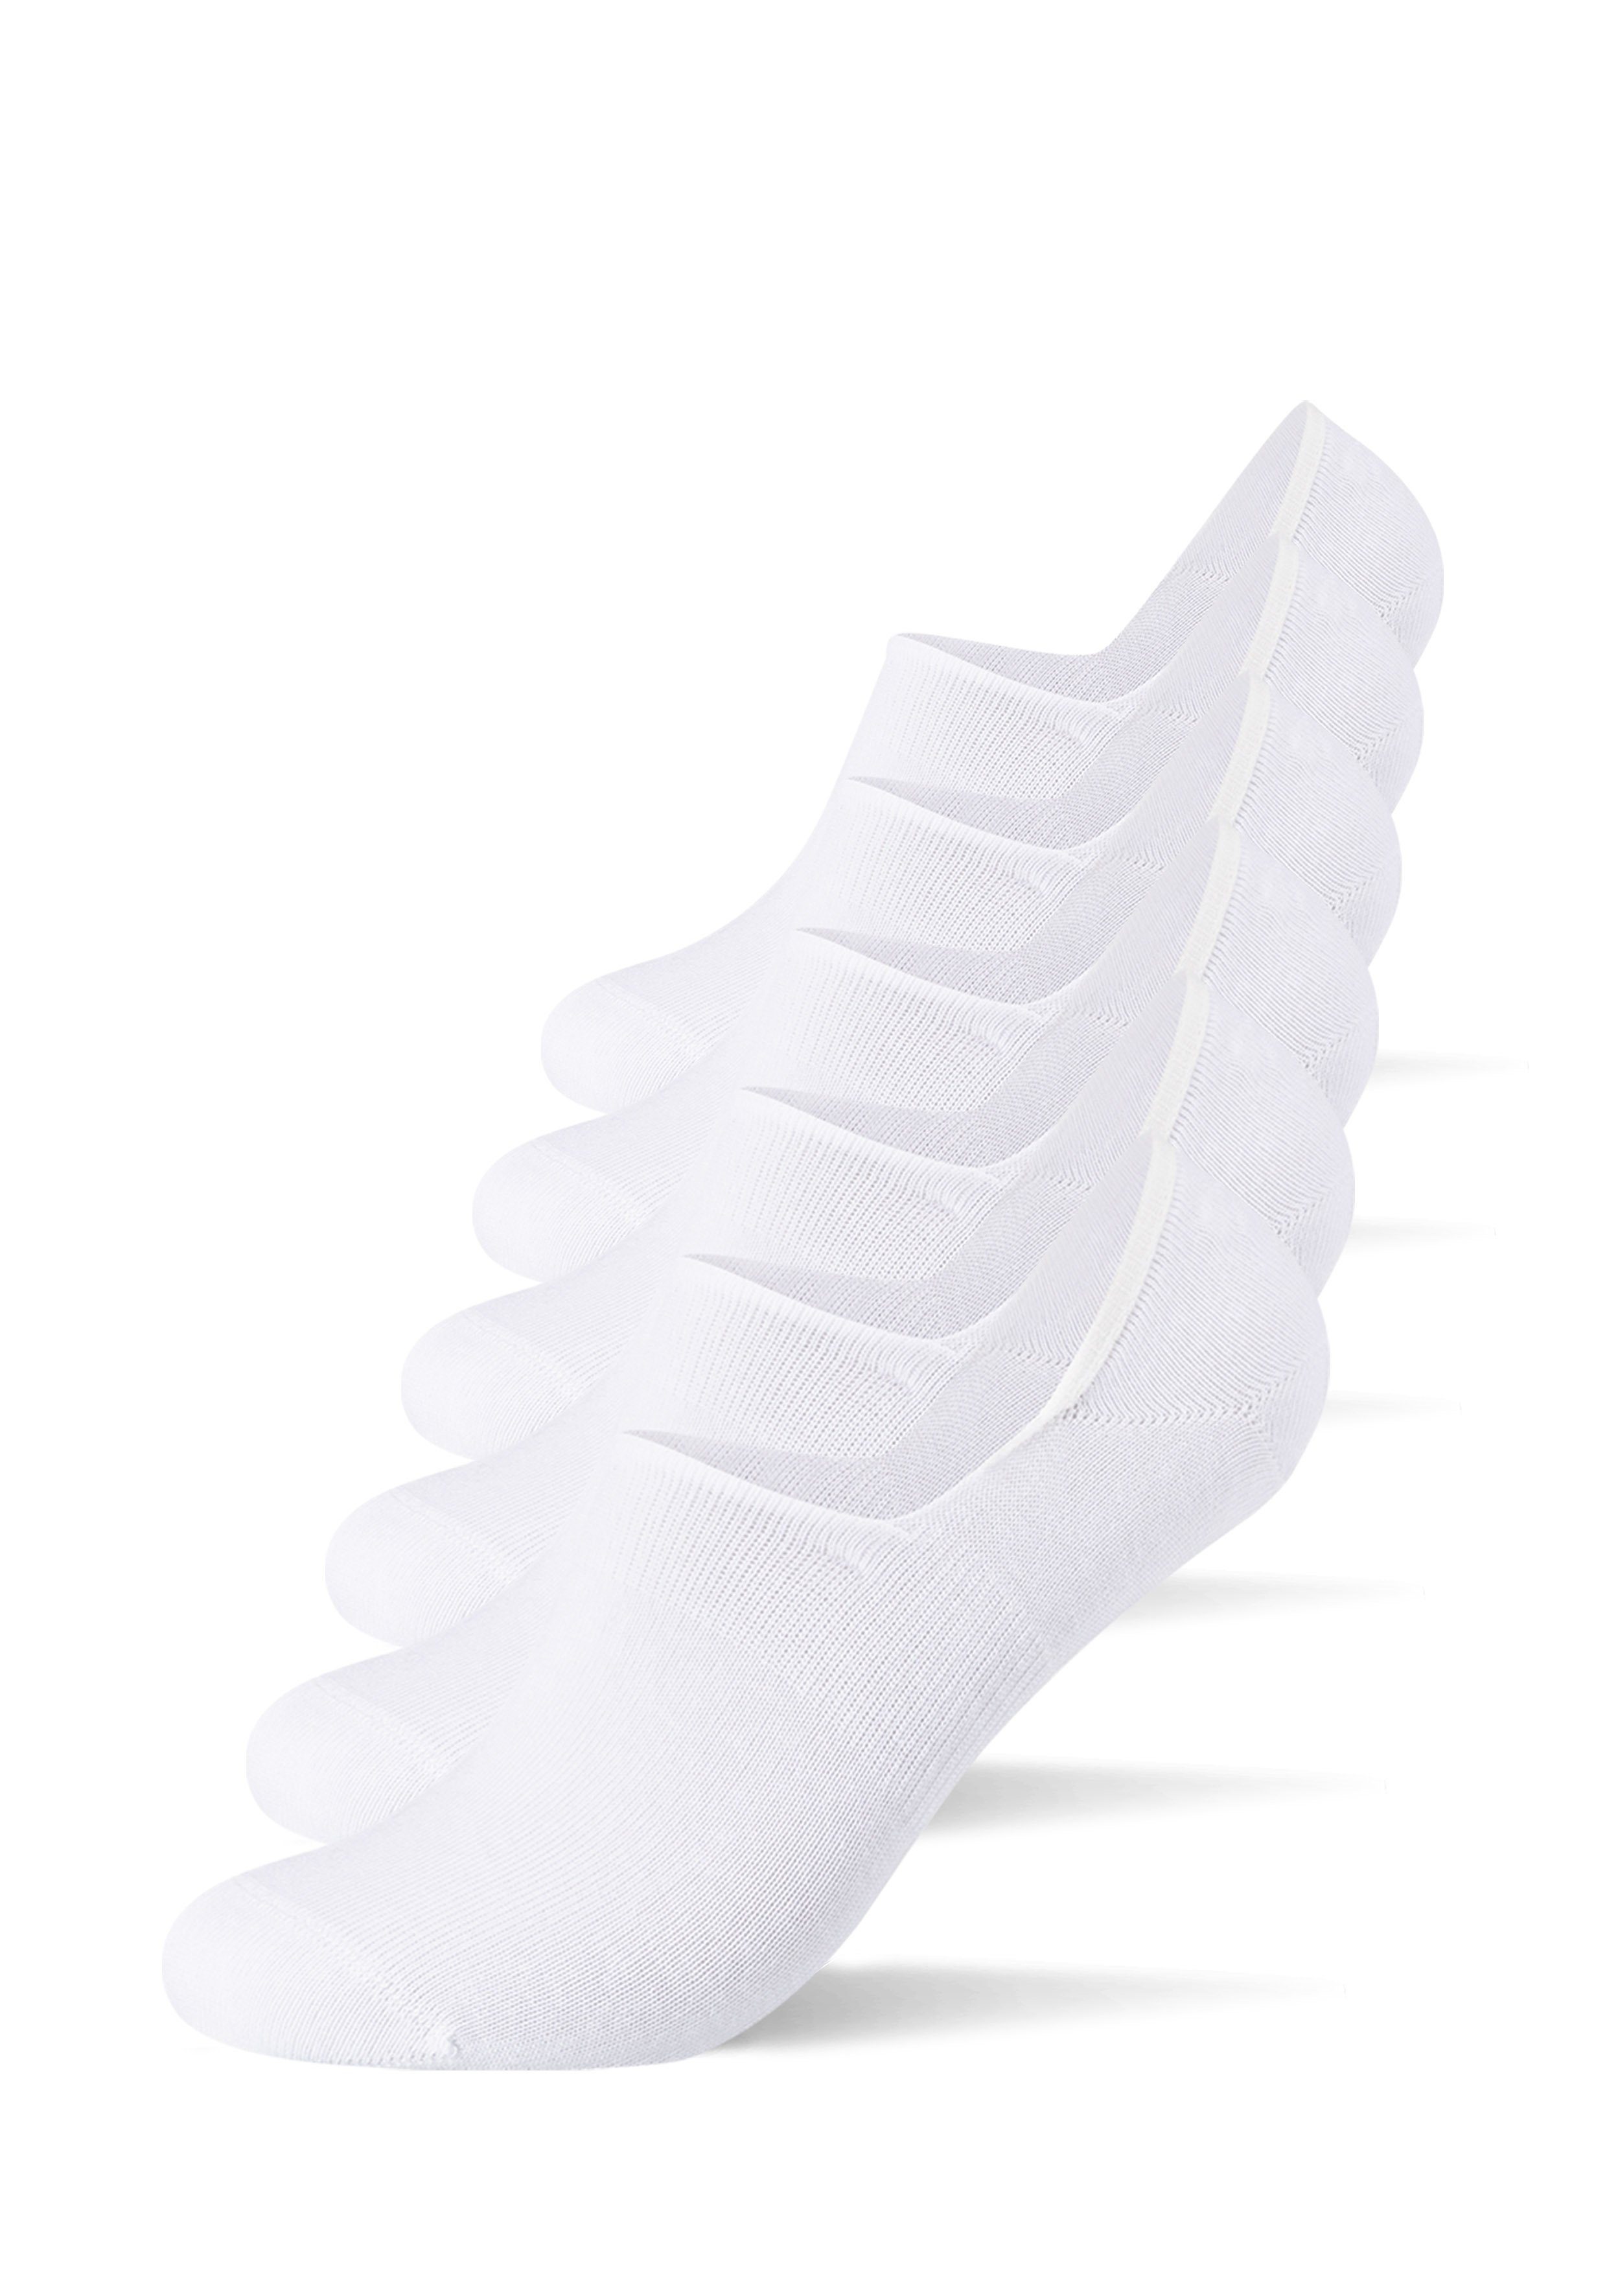 Camano Socken unsichtbare Sneaker Socken (6-Paar) in bequemen Design weiß